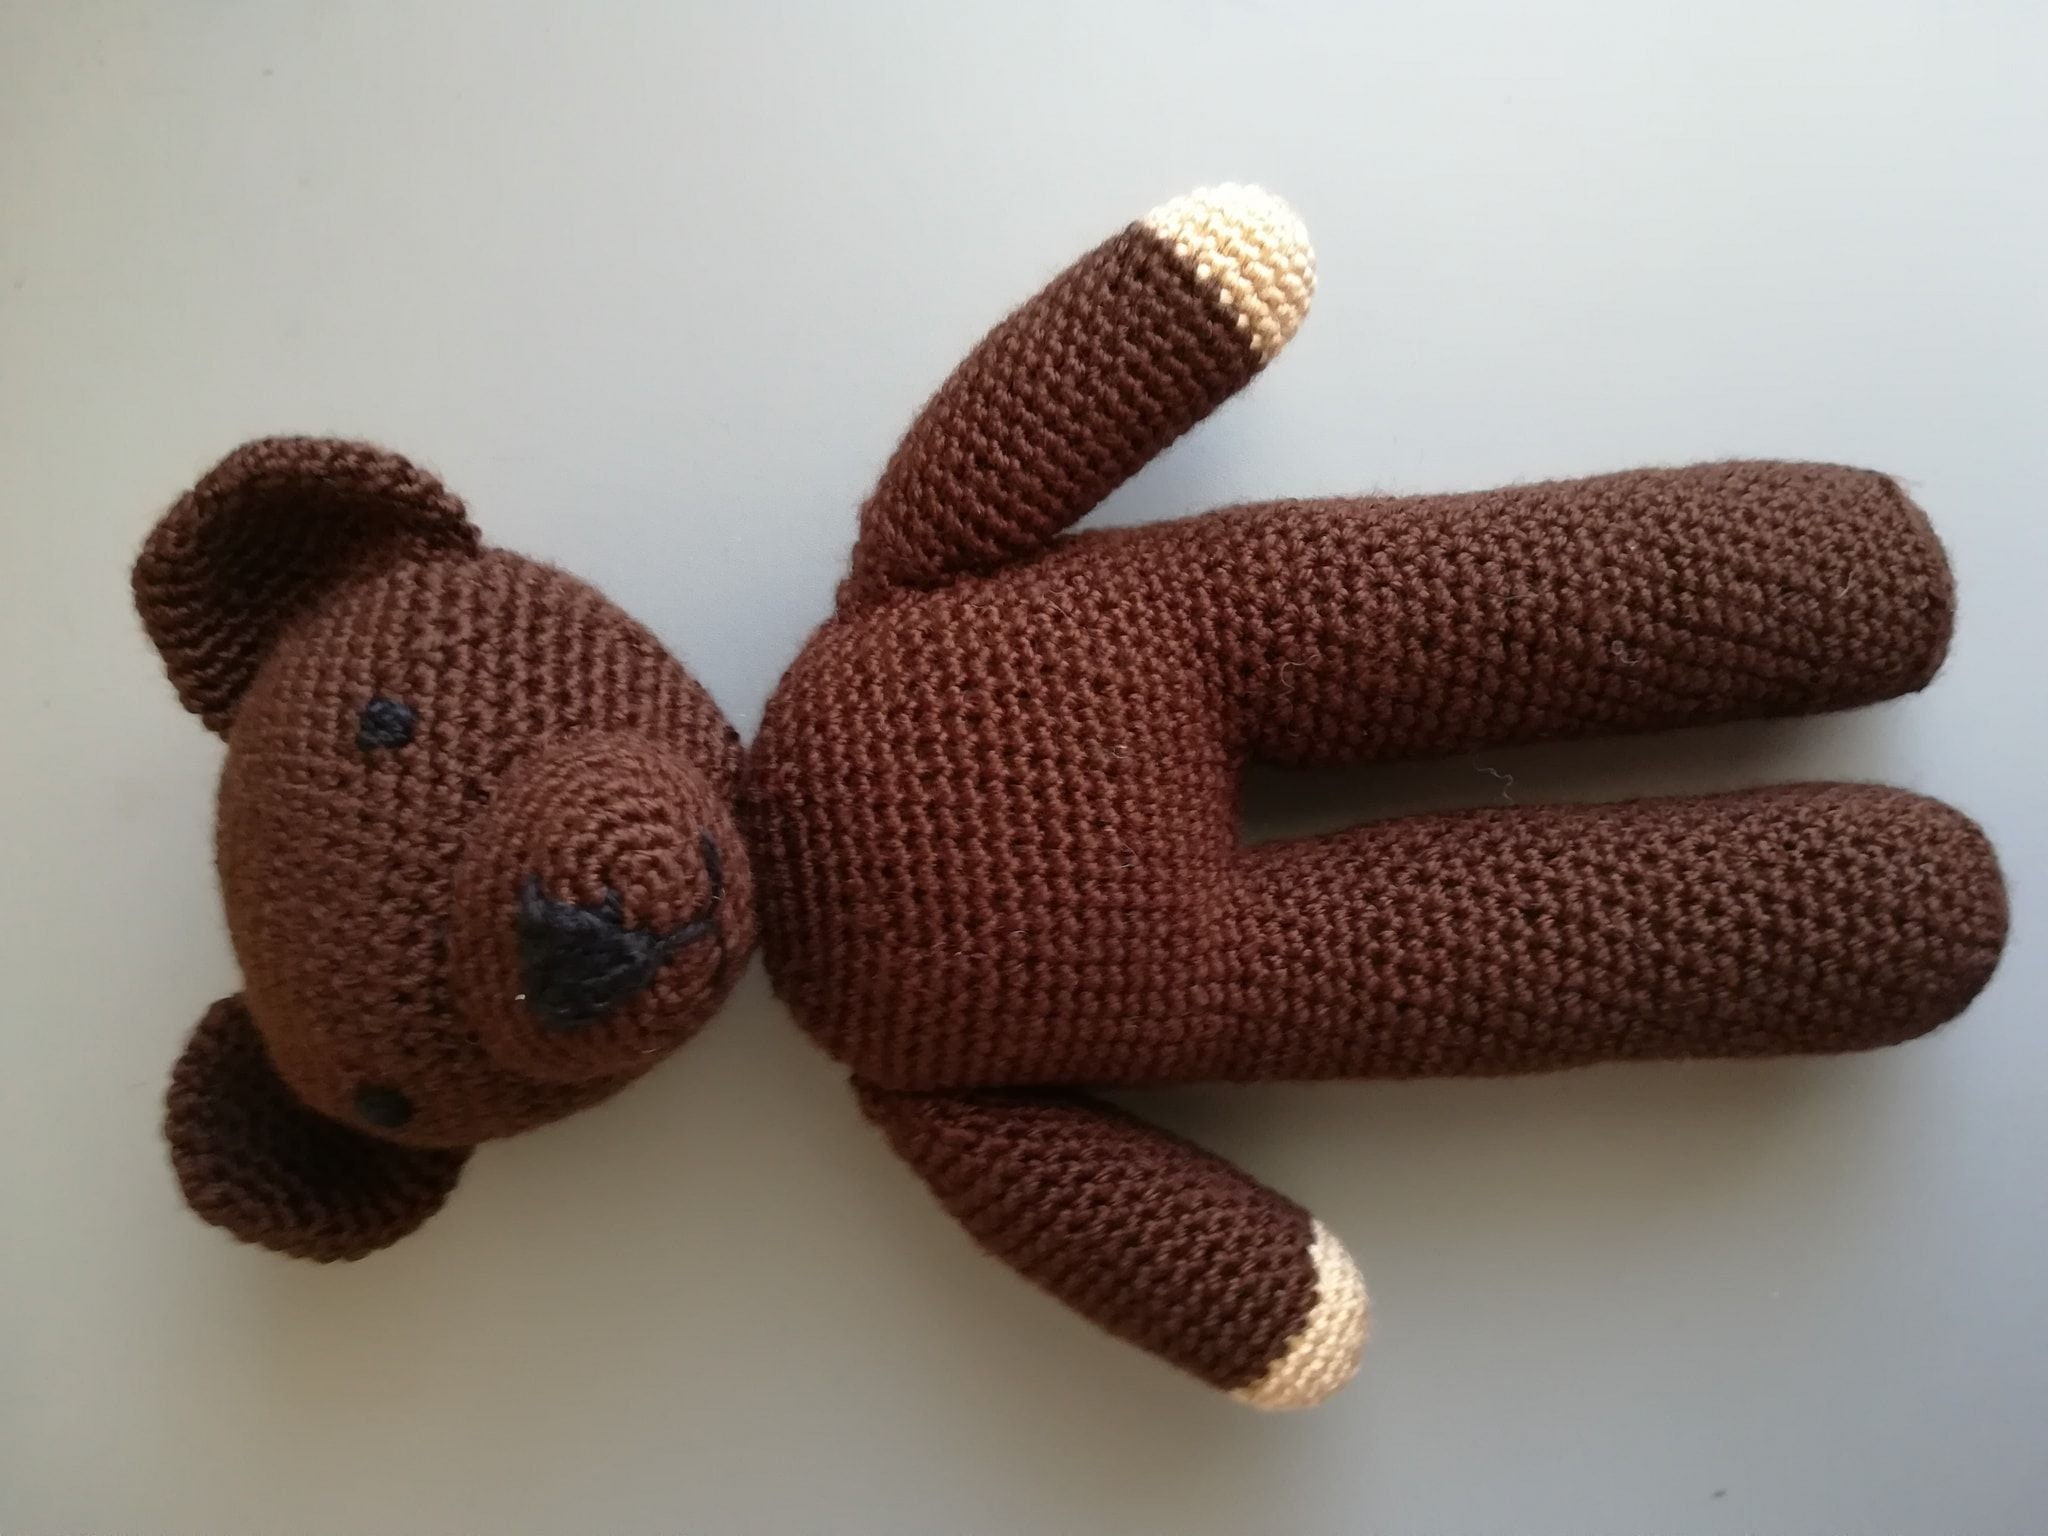 Mr. Bean Plush Toy Super Cute Teddy Bear Plush Toy Doll Holiday